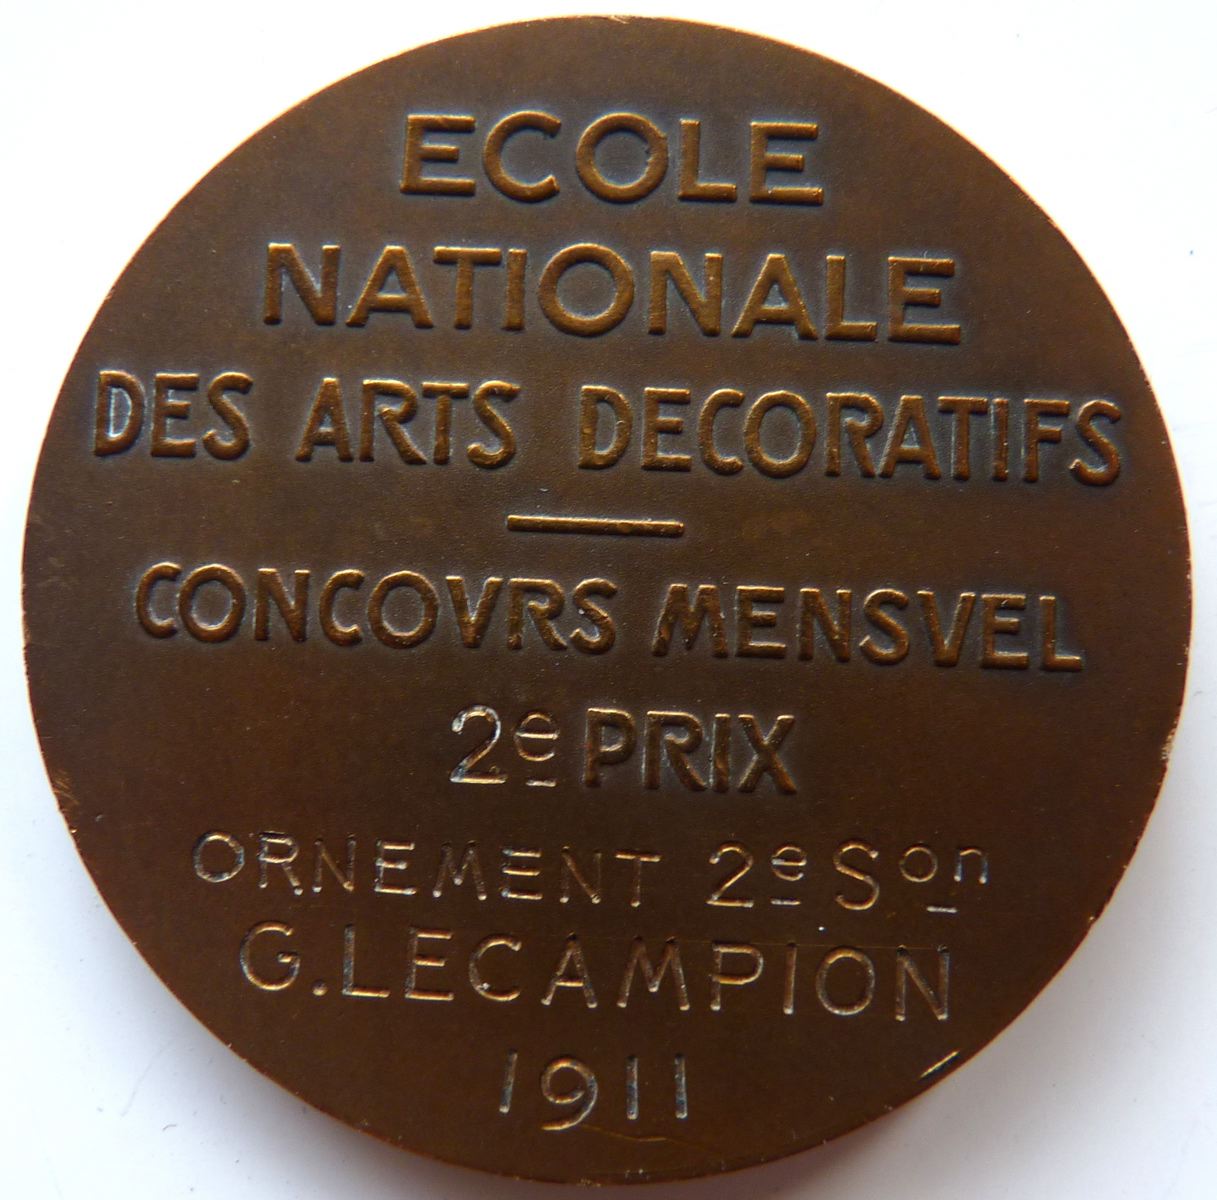 Ecole Nationale des Arts Décoratifs - Concours Mensuel 2e prix - Ornement - G. Lecampion 1911